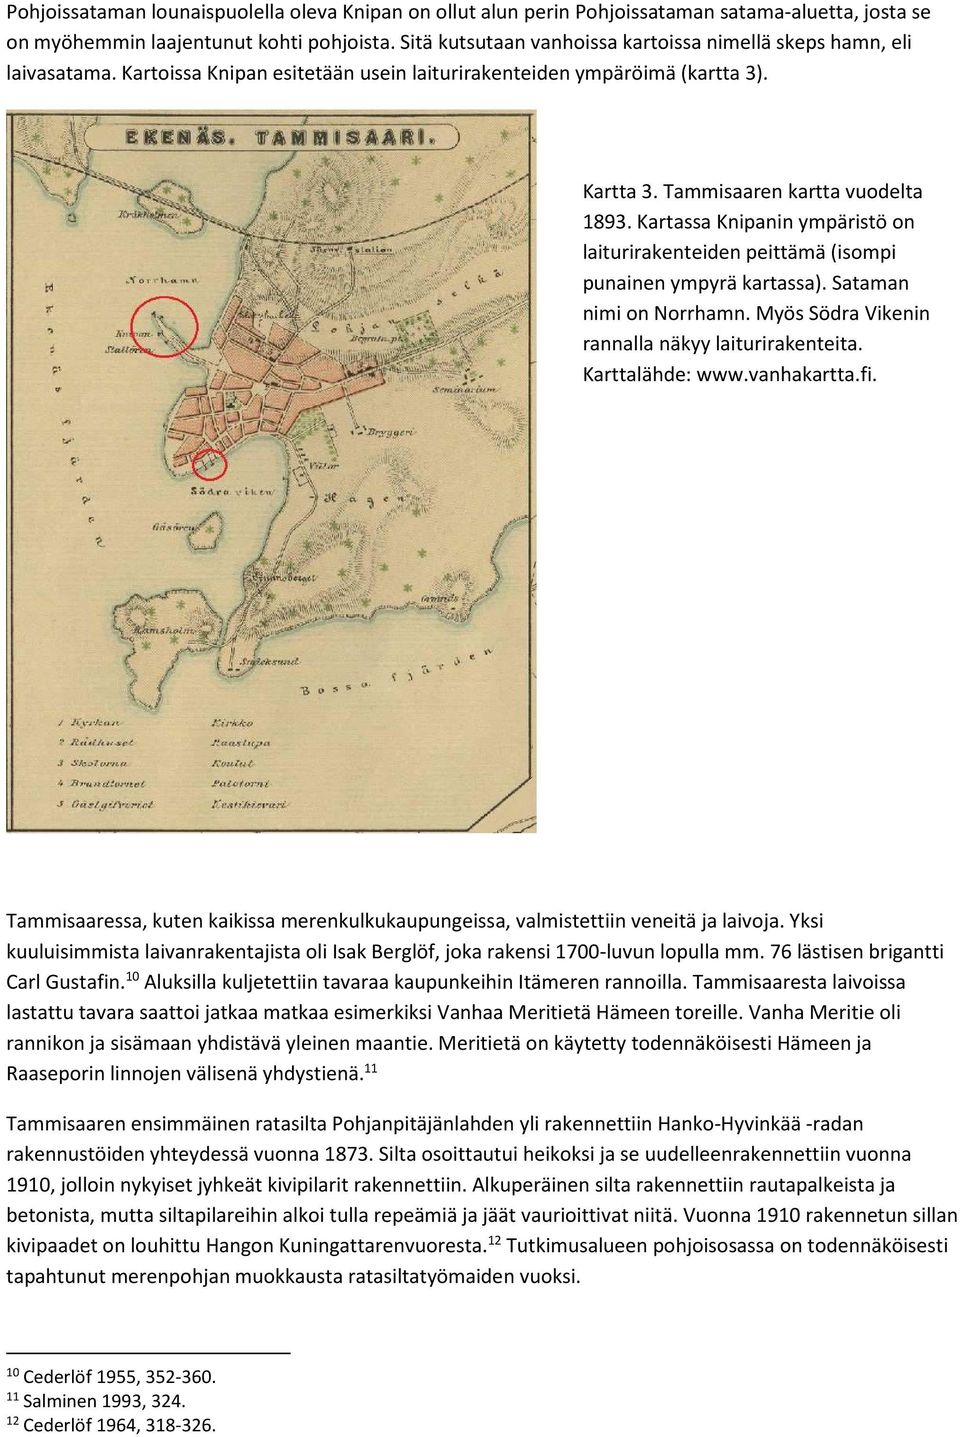 Kartassa Knipanin ympäristö on laiturirakenteiden peittämä (isompi punainen ympyrä kartassa). Sataman nimi on Norrhamn. Myös Södra Vikenin rannalla näkyy laiturirakenteita. Karttalähde: www.